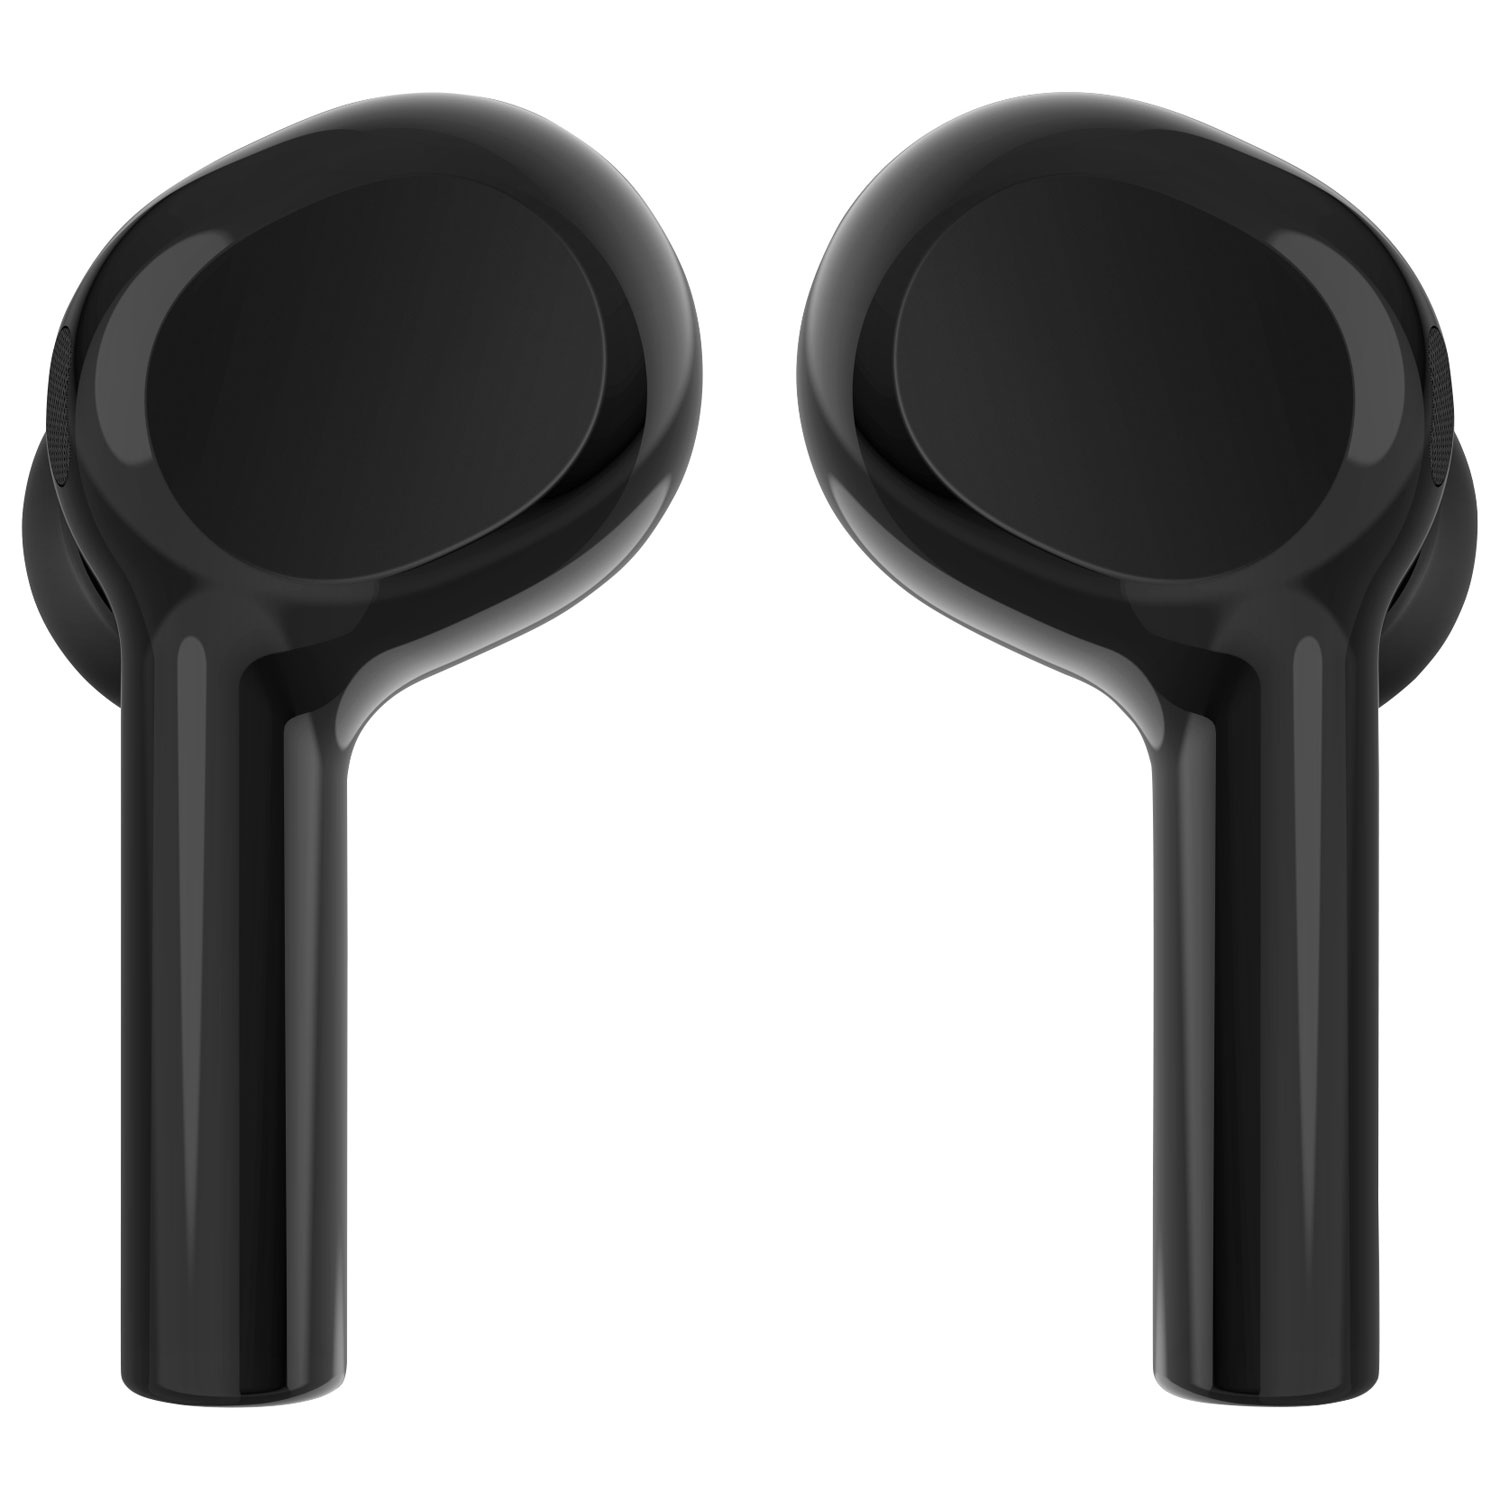 Belkin SoundForm Freedom In-Ear True Wireless Earbuds - Black